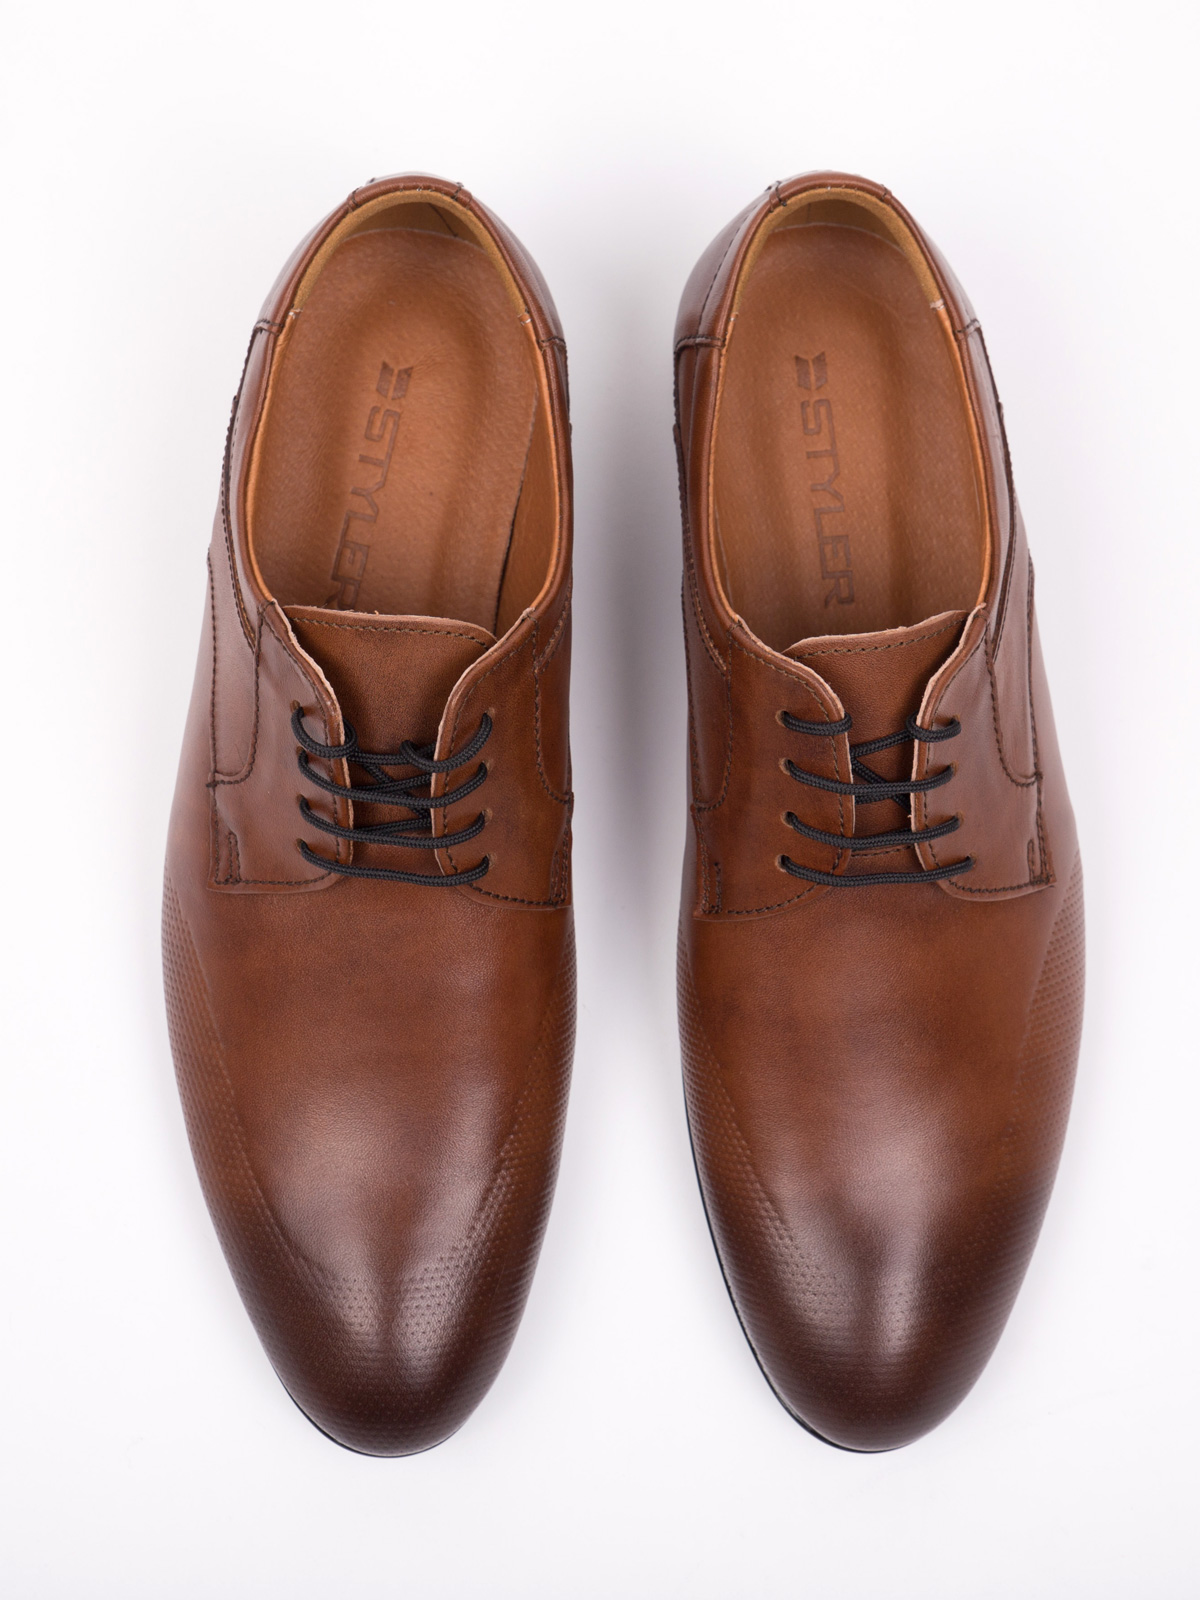  elegant leather shoes  - 81072 - € 72.00 img4